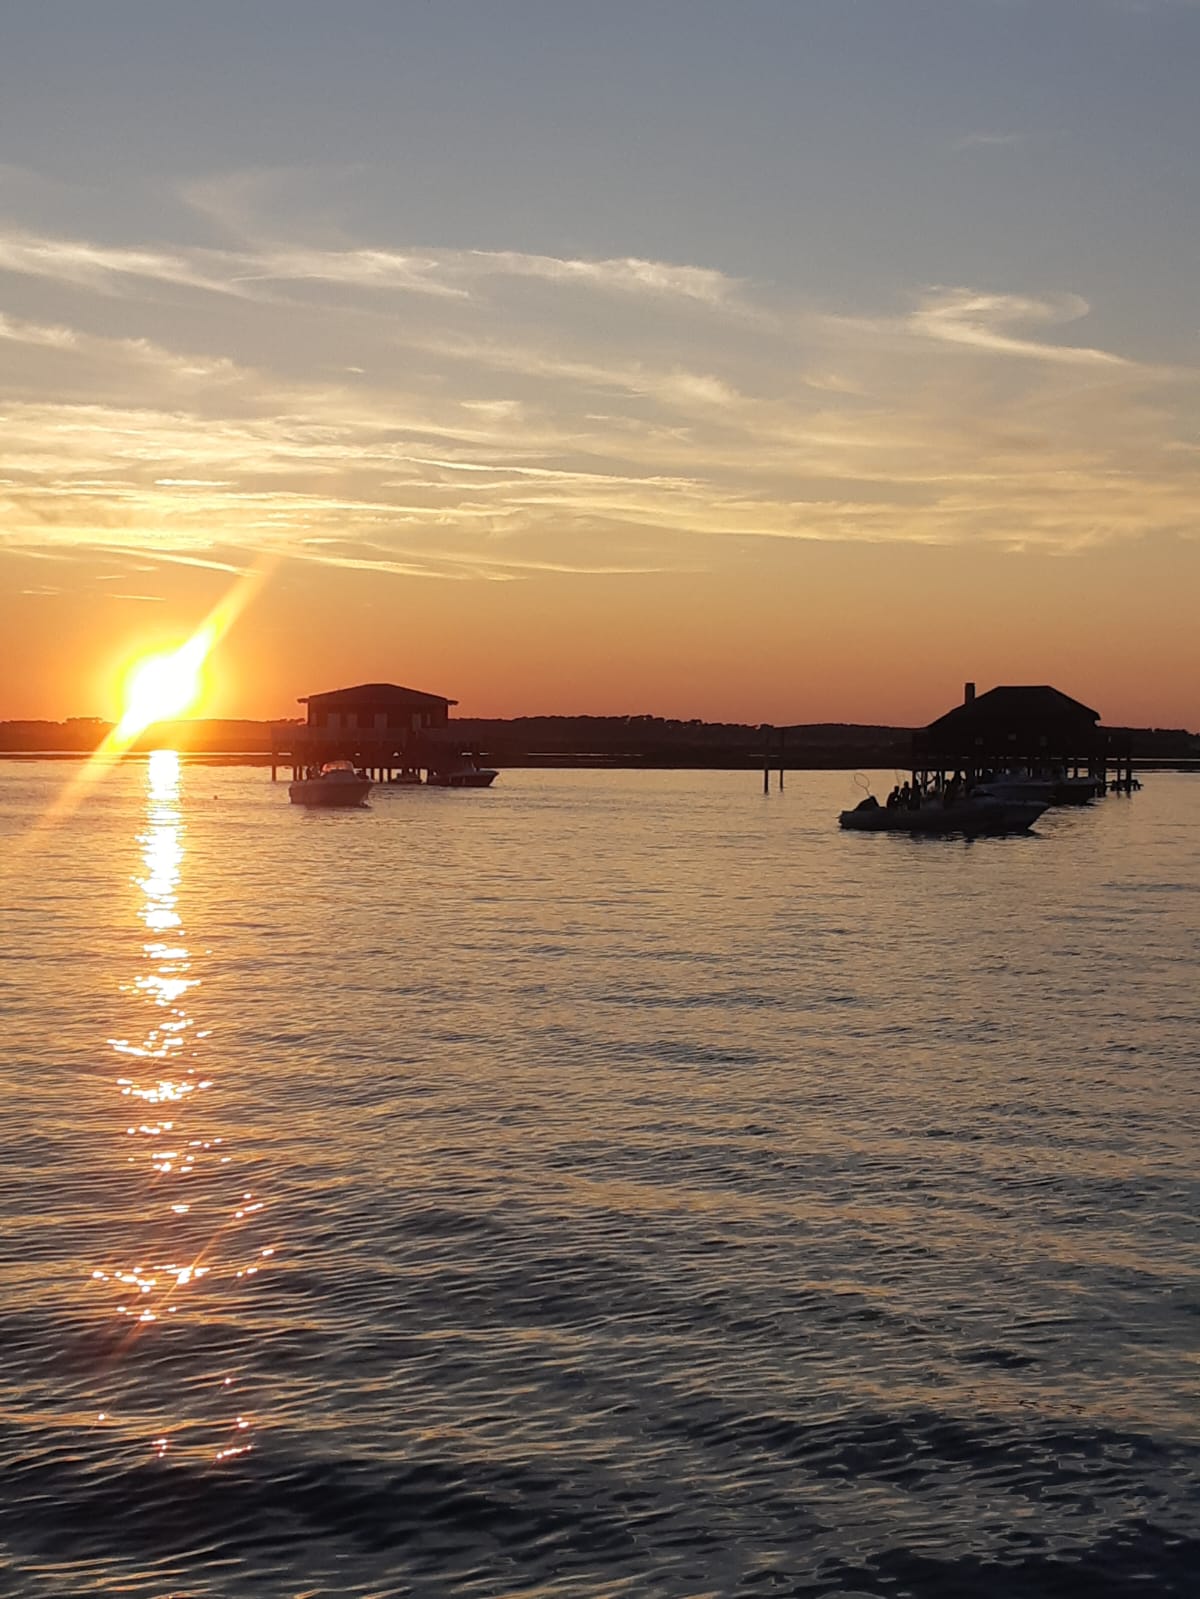 Arca Ferret | Balade en bateau au coucher de soleil sur le Bassin d' Arcachon